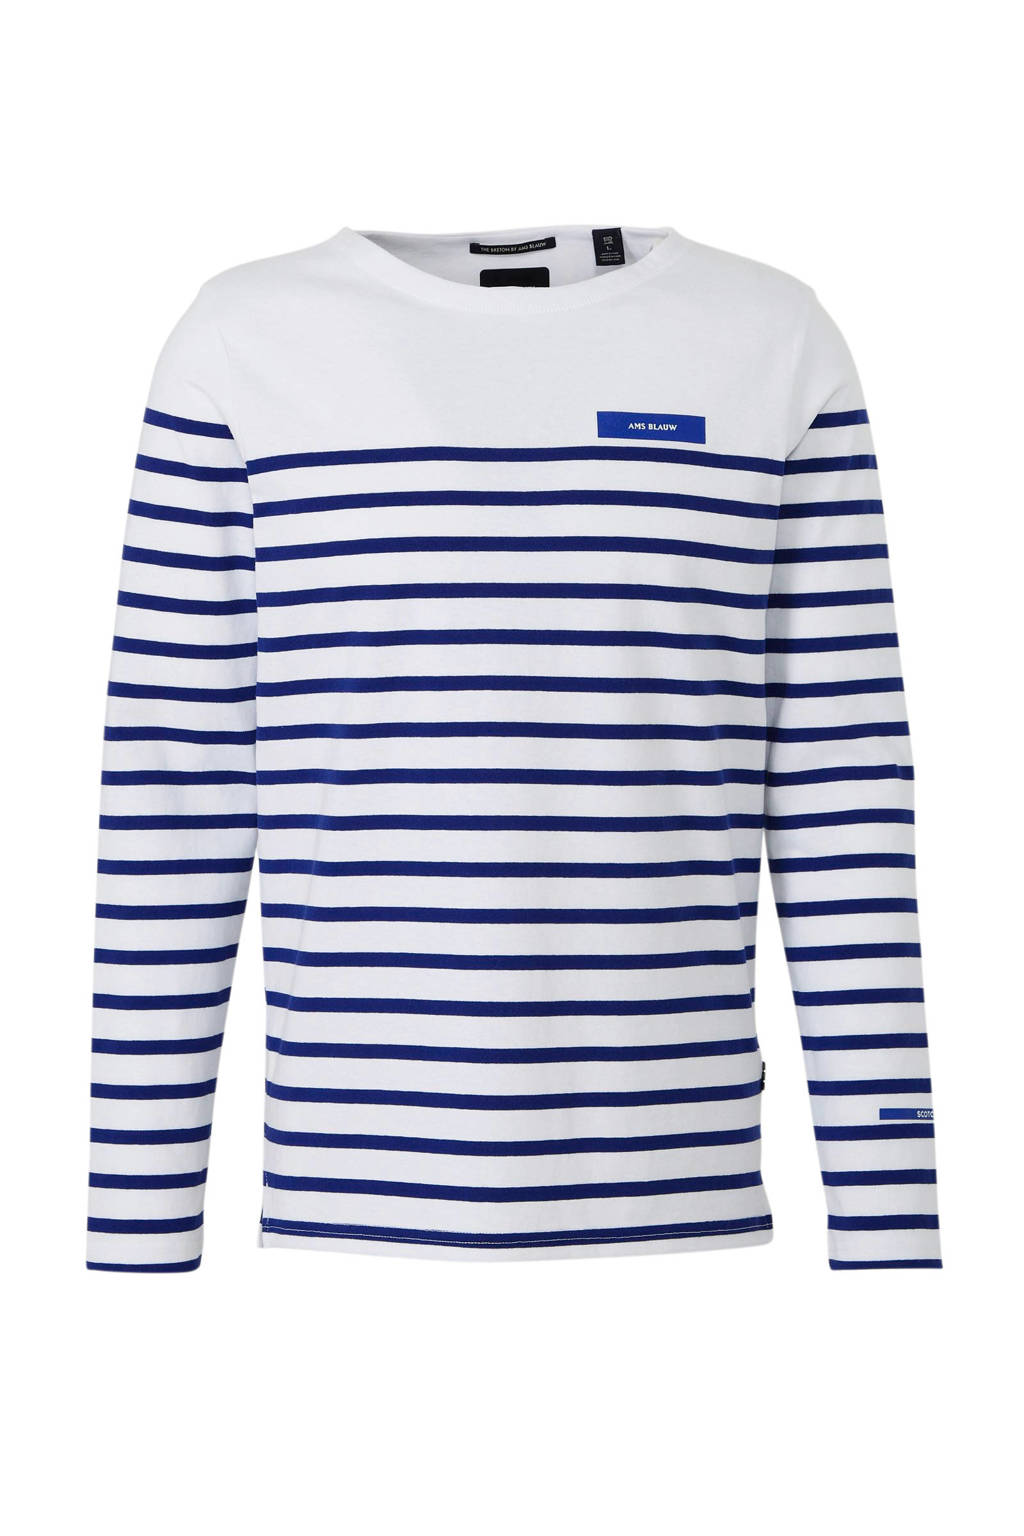 Fonkelnieuw Scotch & Soda Amsterdams Blauw gestreept T-shirt wit/blauw | wehkamp MV-46